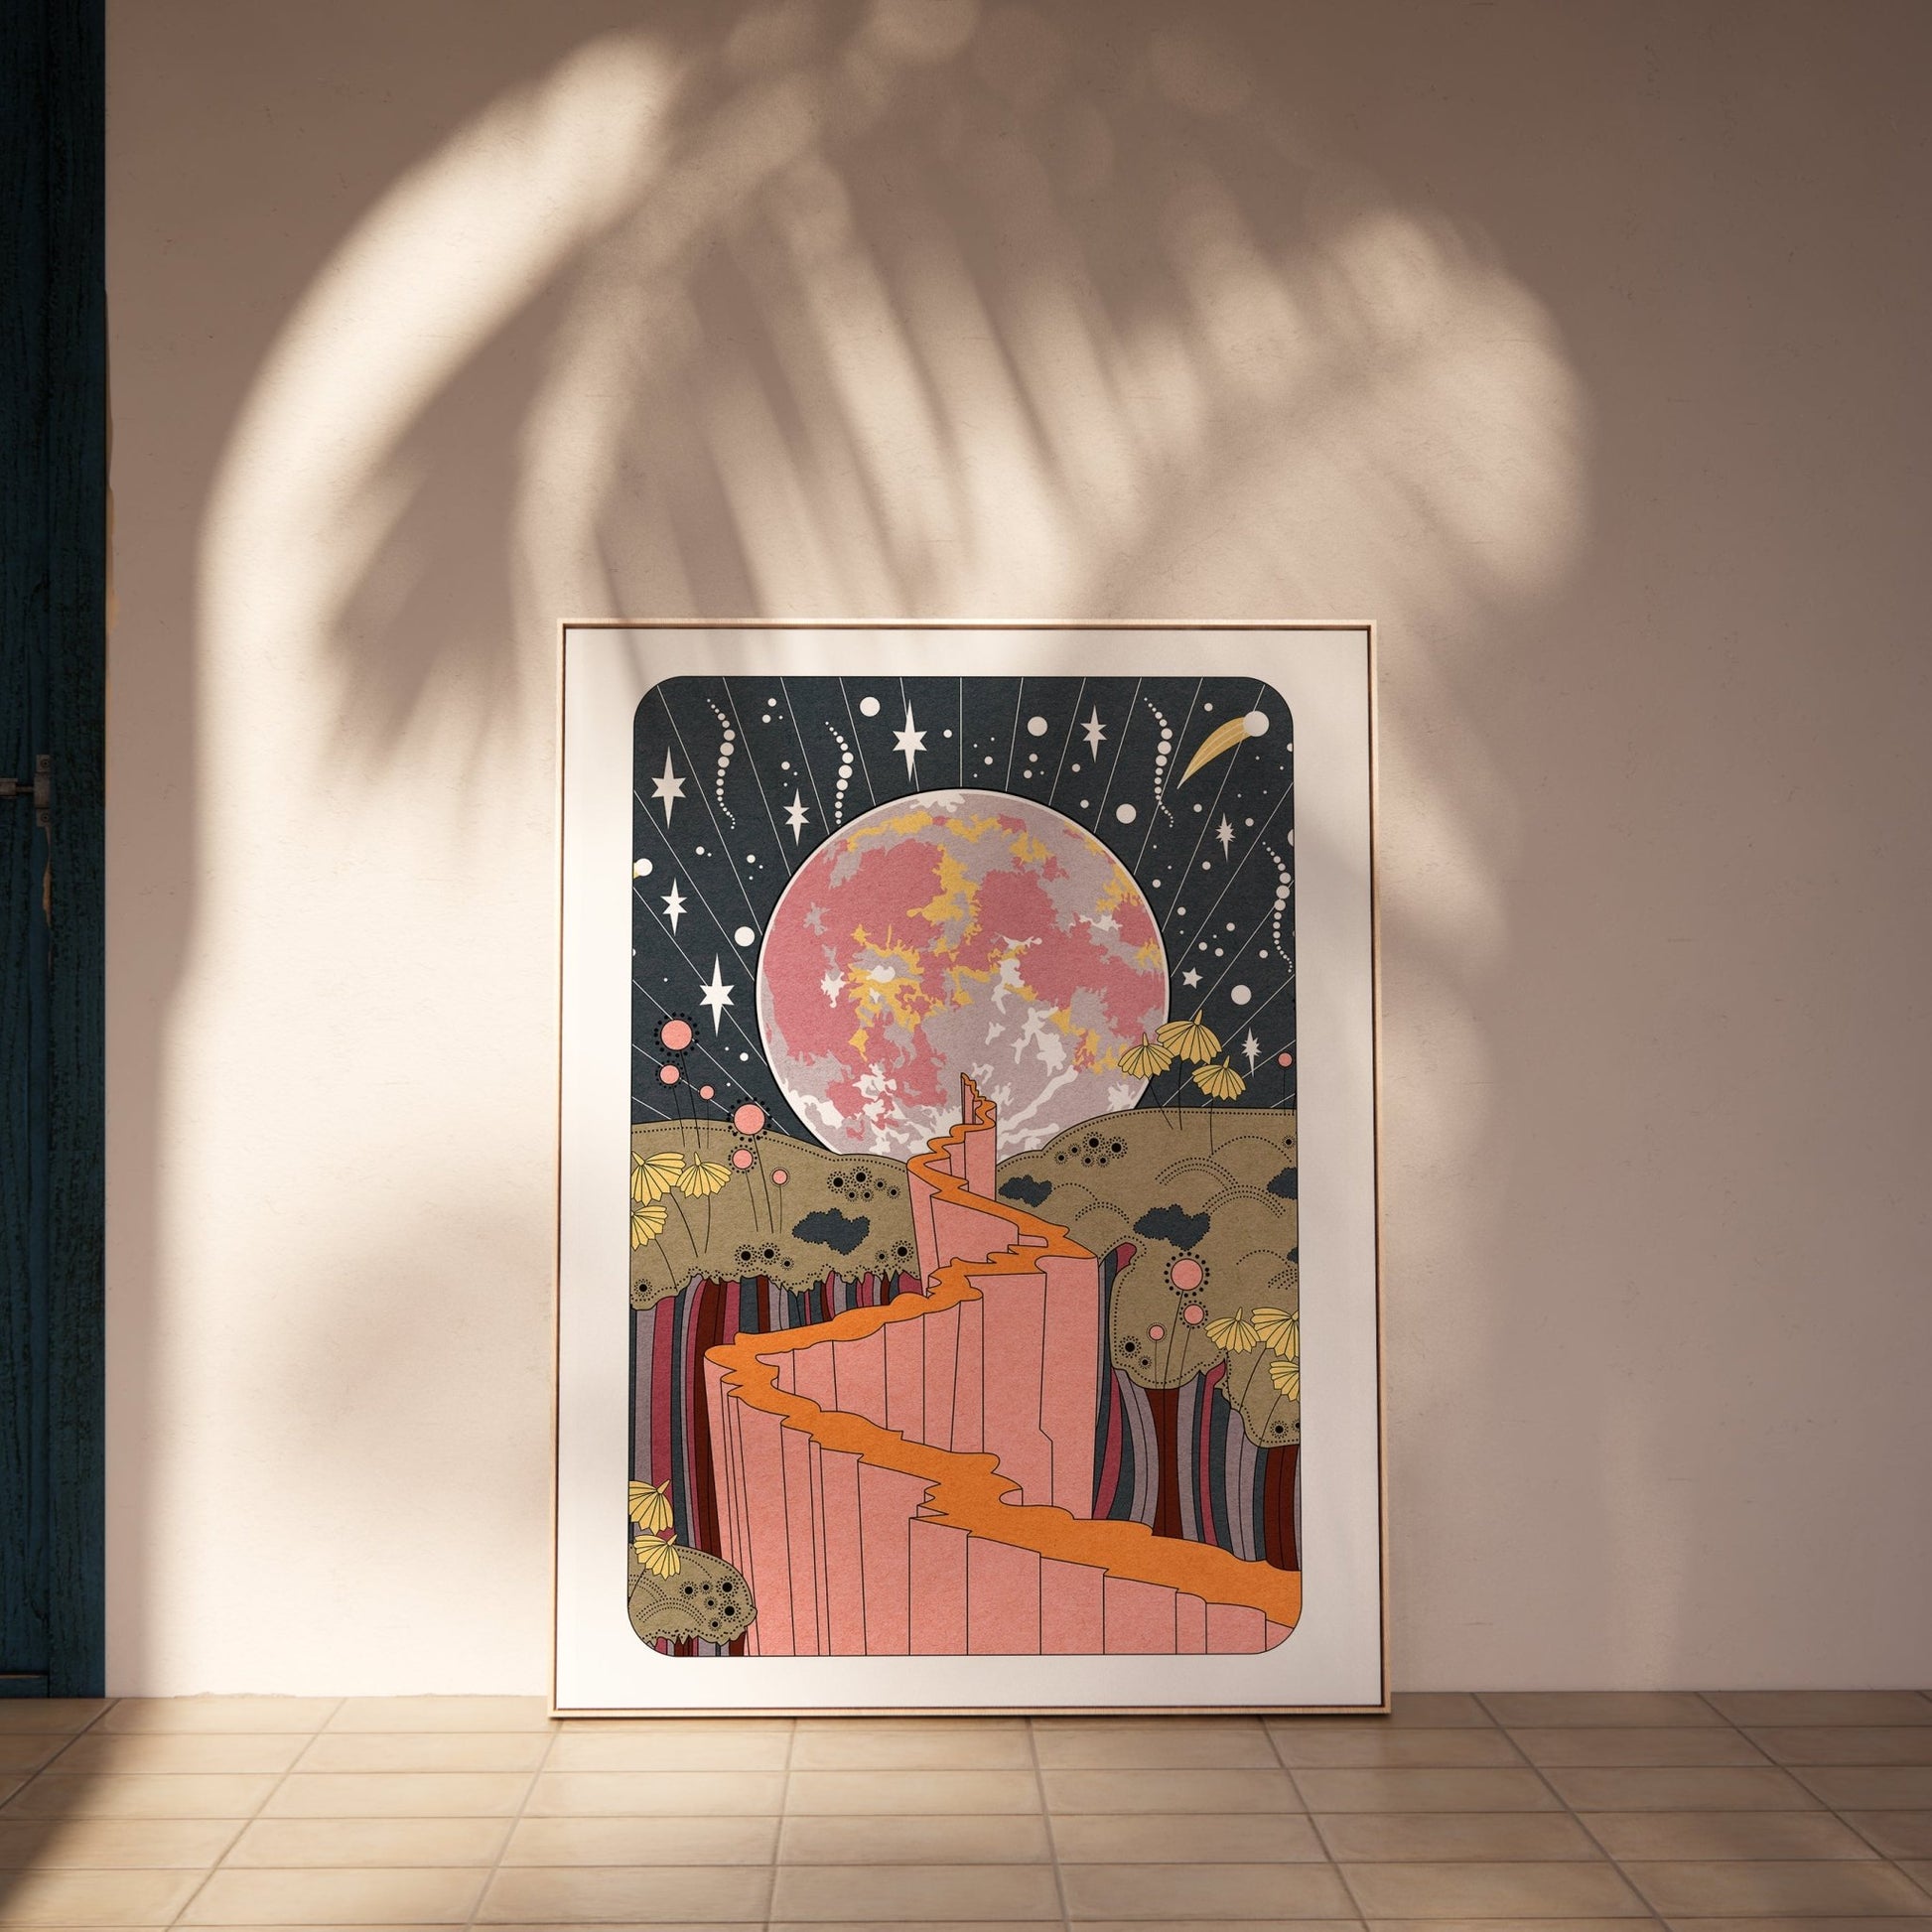 Stargazer art print | Celestial affordable tarot style poster print - OMG KITTY